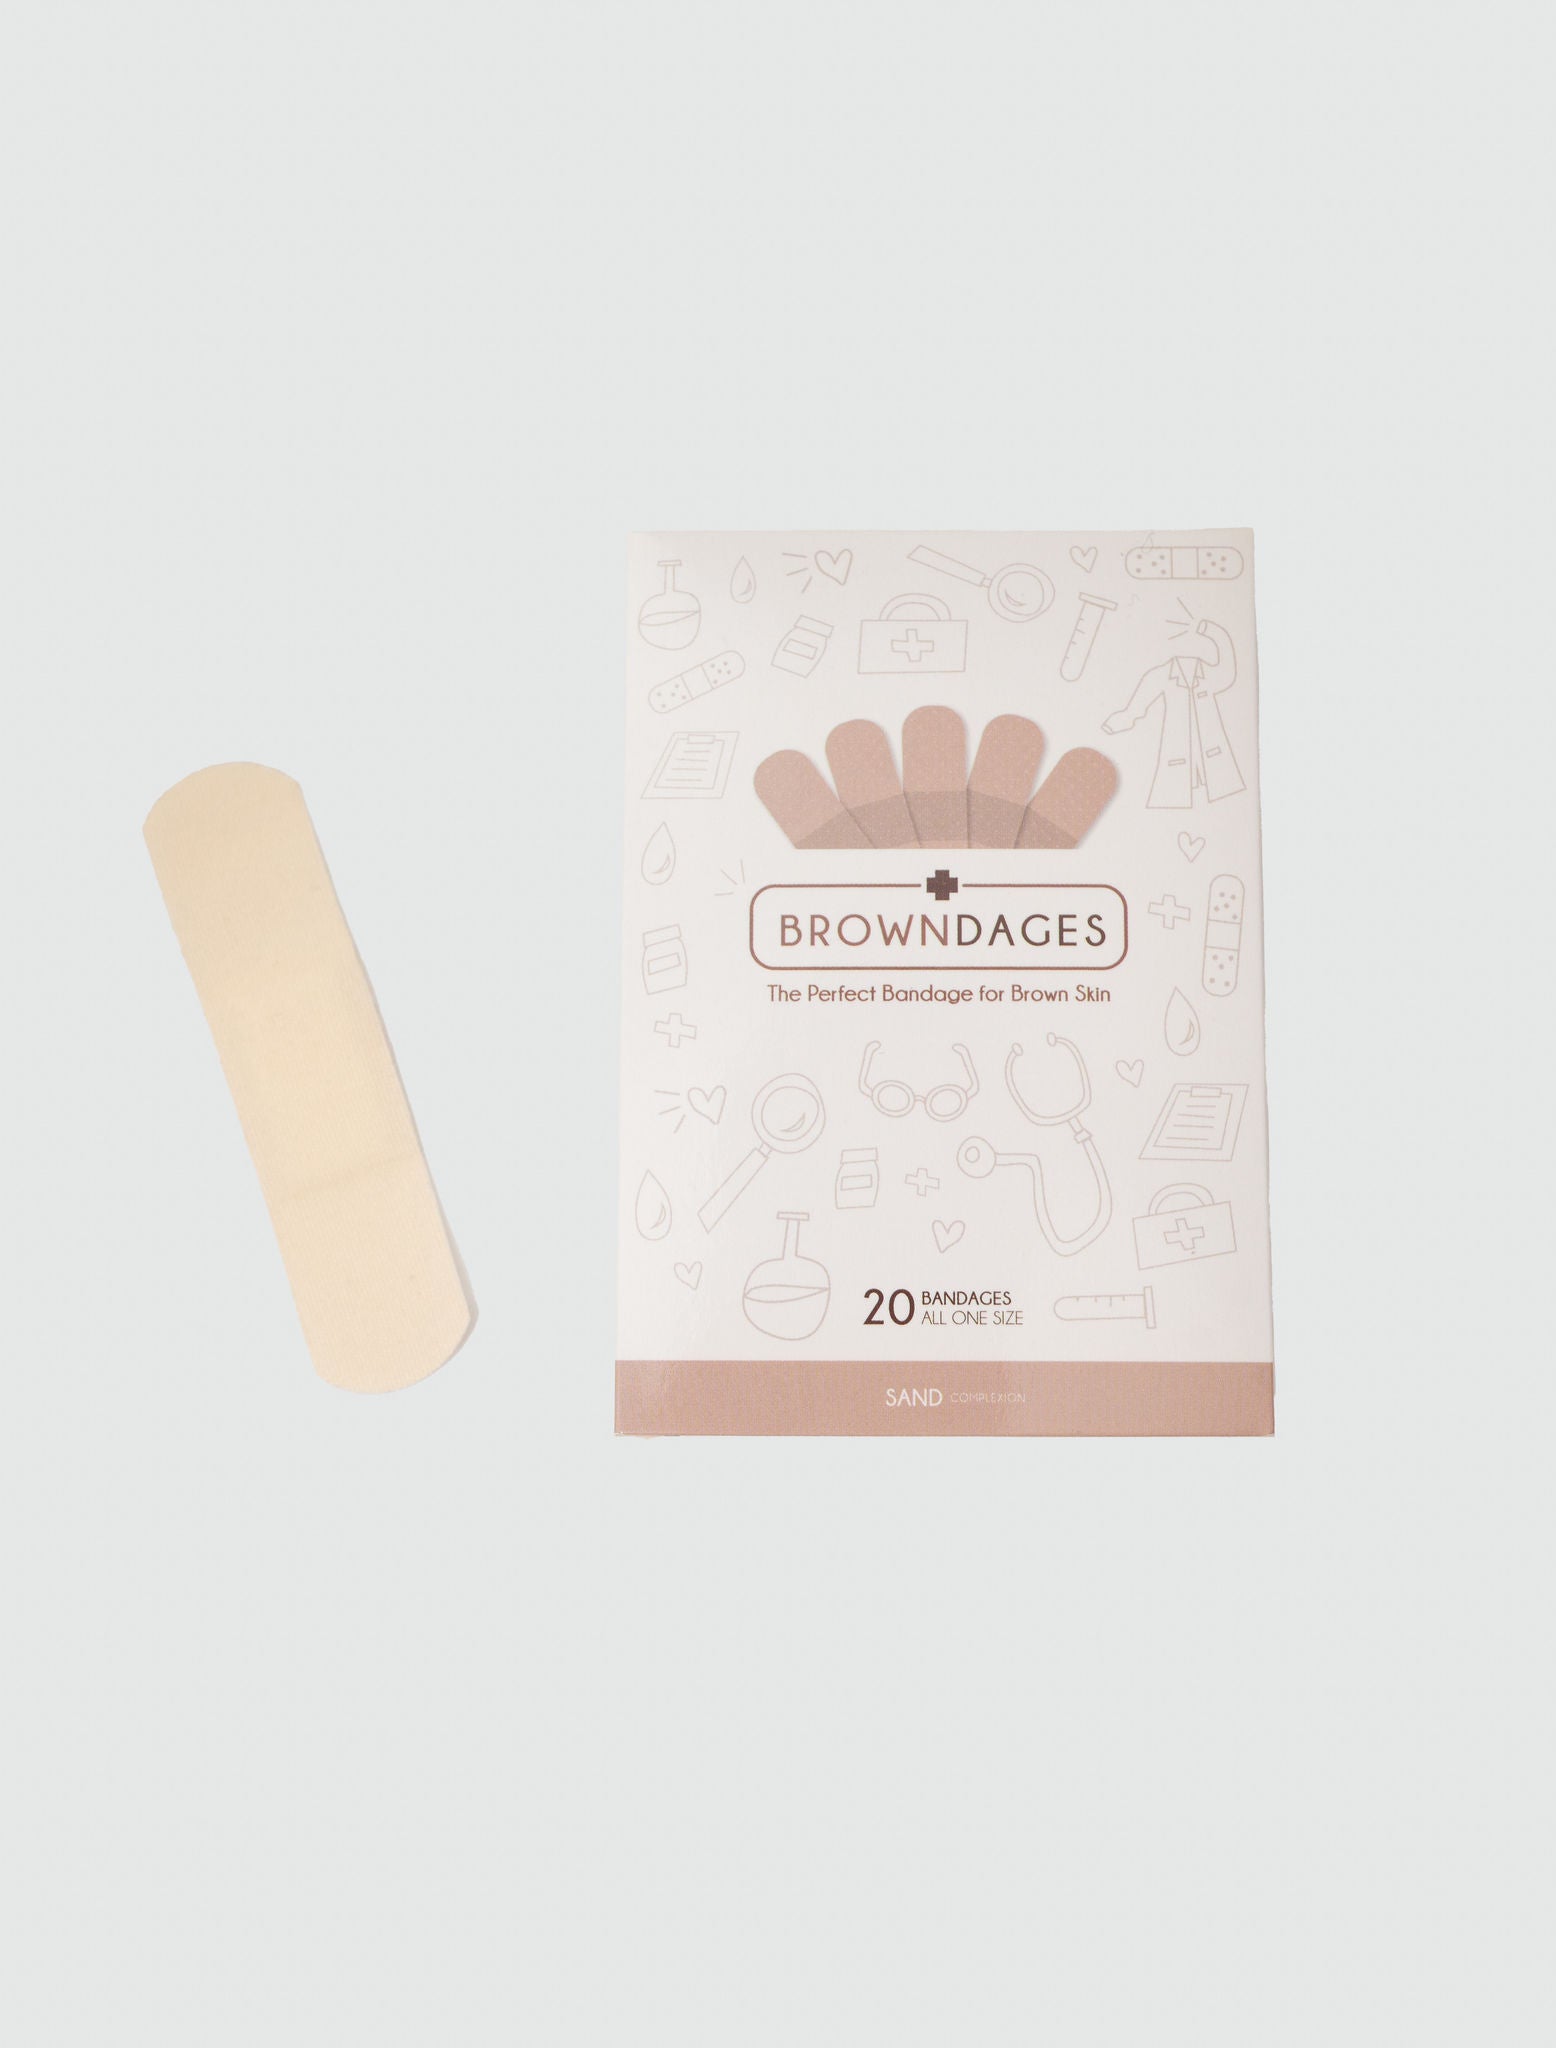 Browndages bandages for lighter skin complexions.